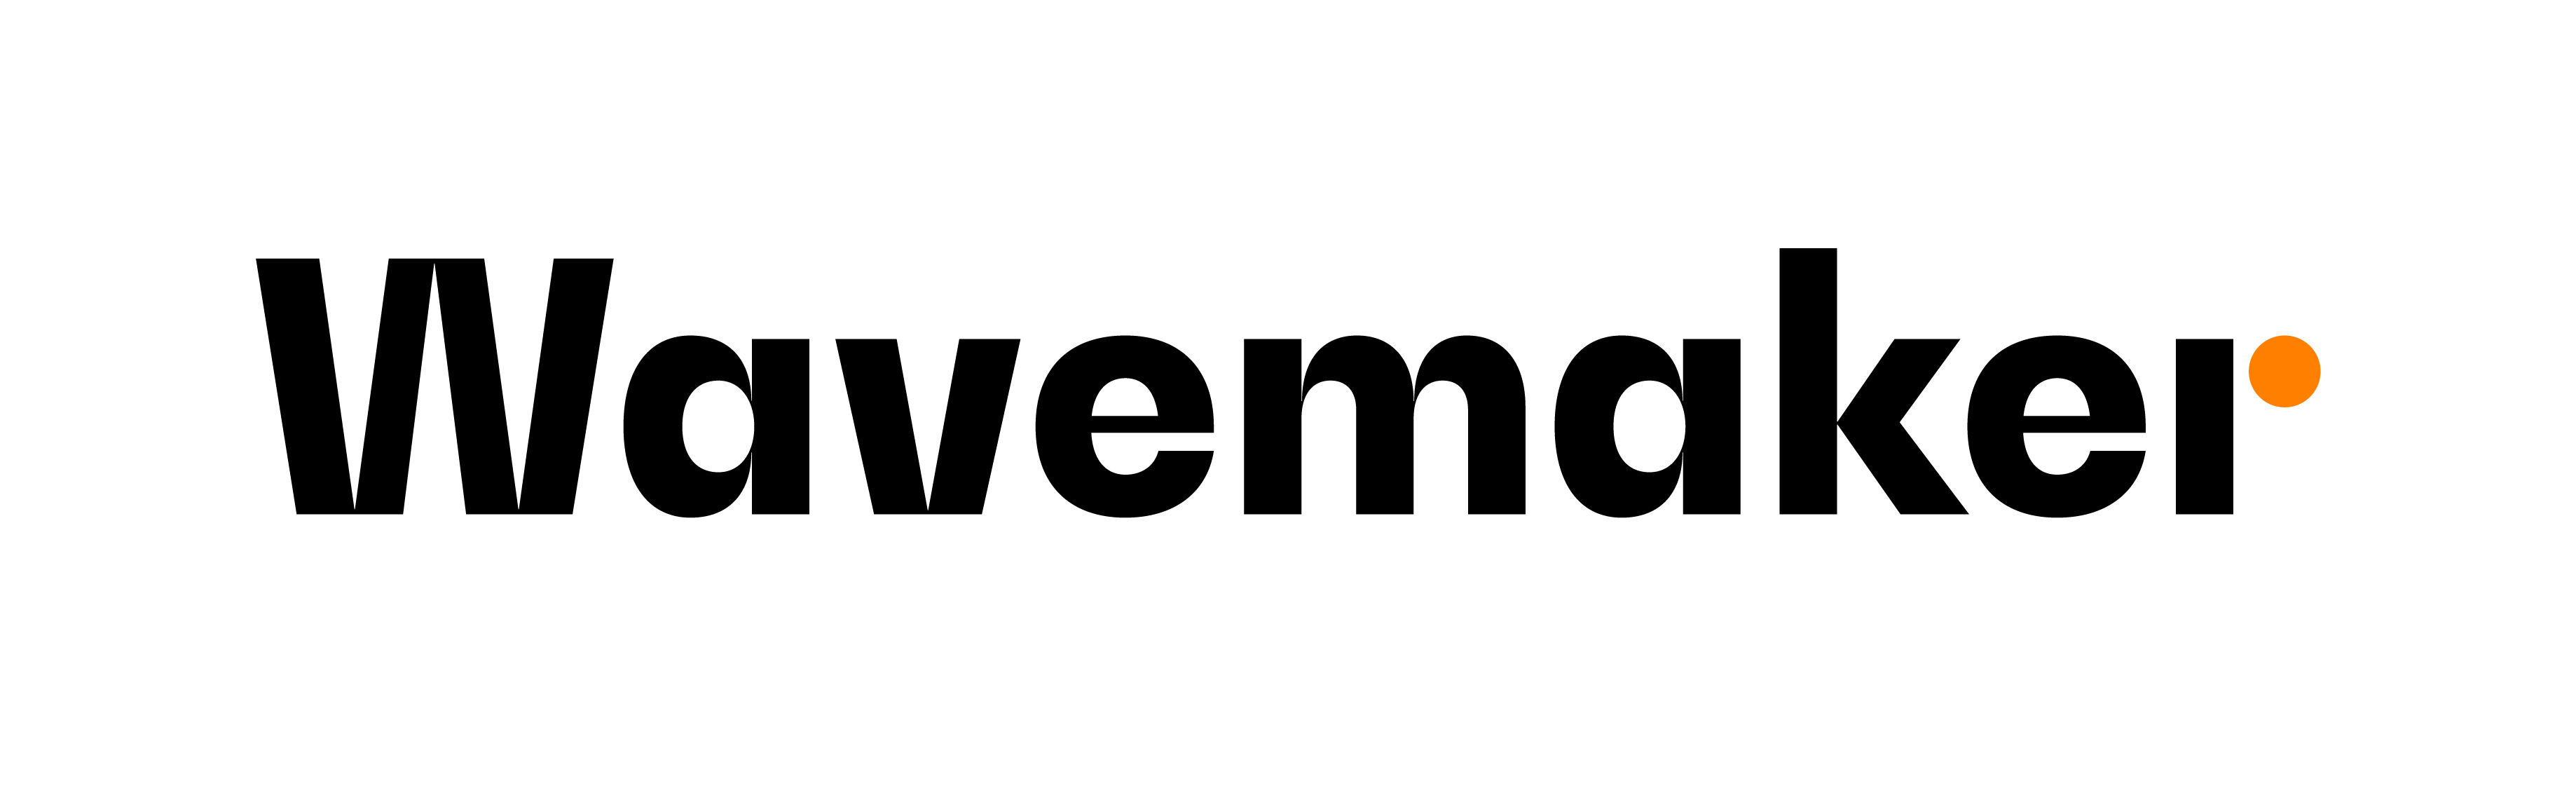 Wavemaker logo_March 2020.jpg